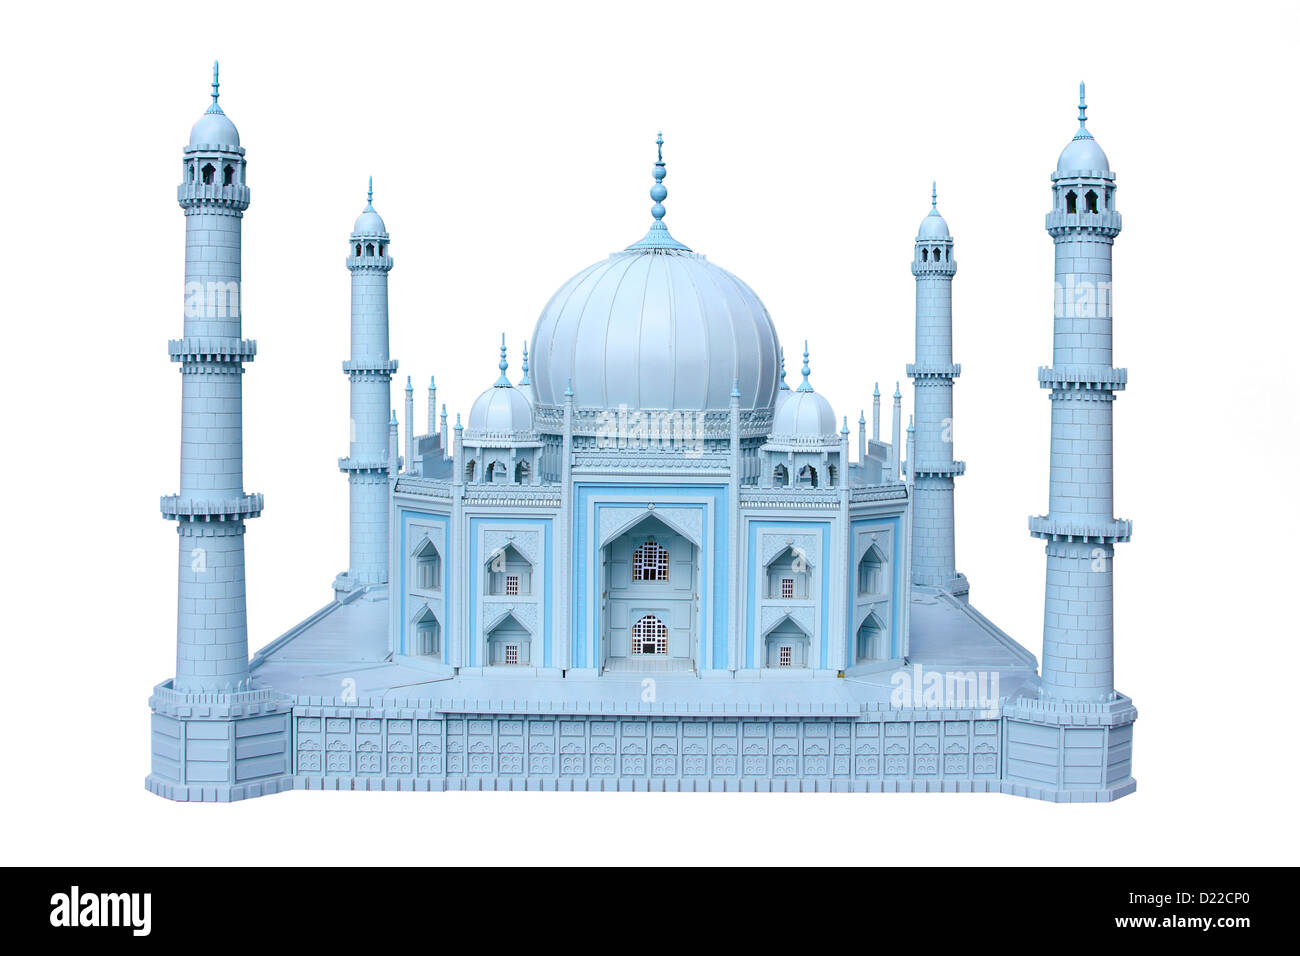 Le modèle de la maquette en bois d'un monument historique de l'Inde Taj Mahal Banque D'Images